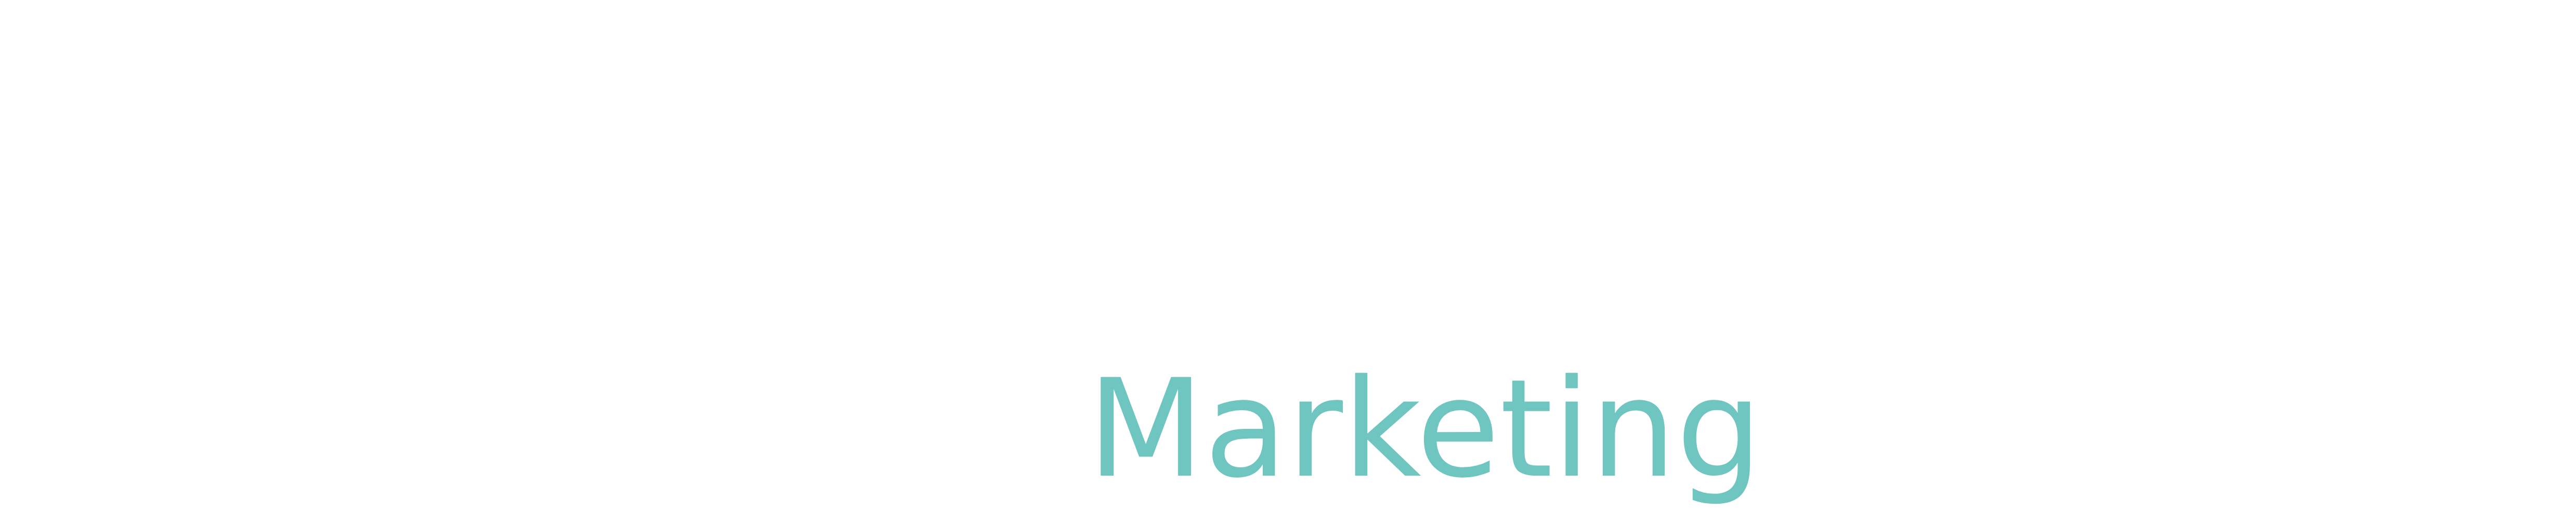 Mehrana Marketing